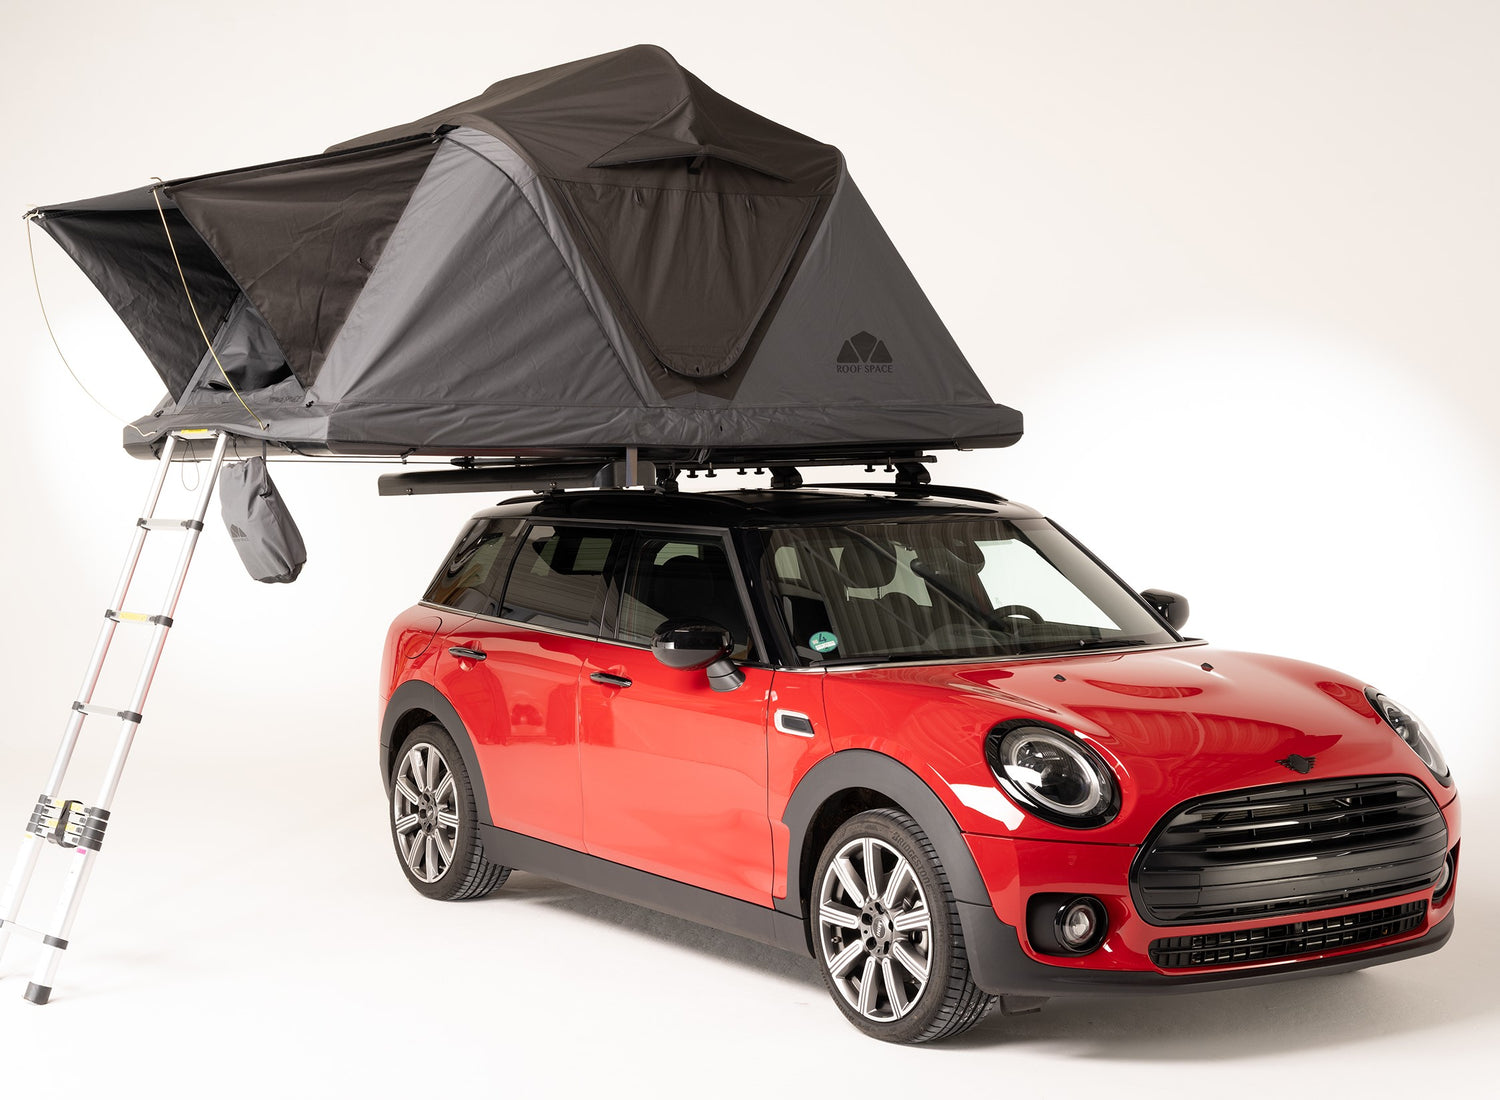 Dachzelt Befestigung: Wie Sie ihr Dachzelt sicher auf dem Auto montieren